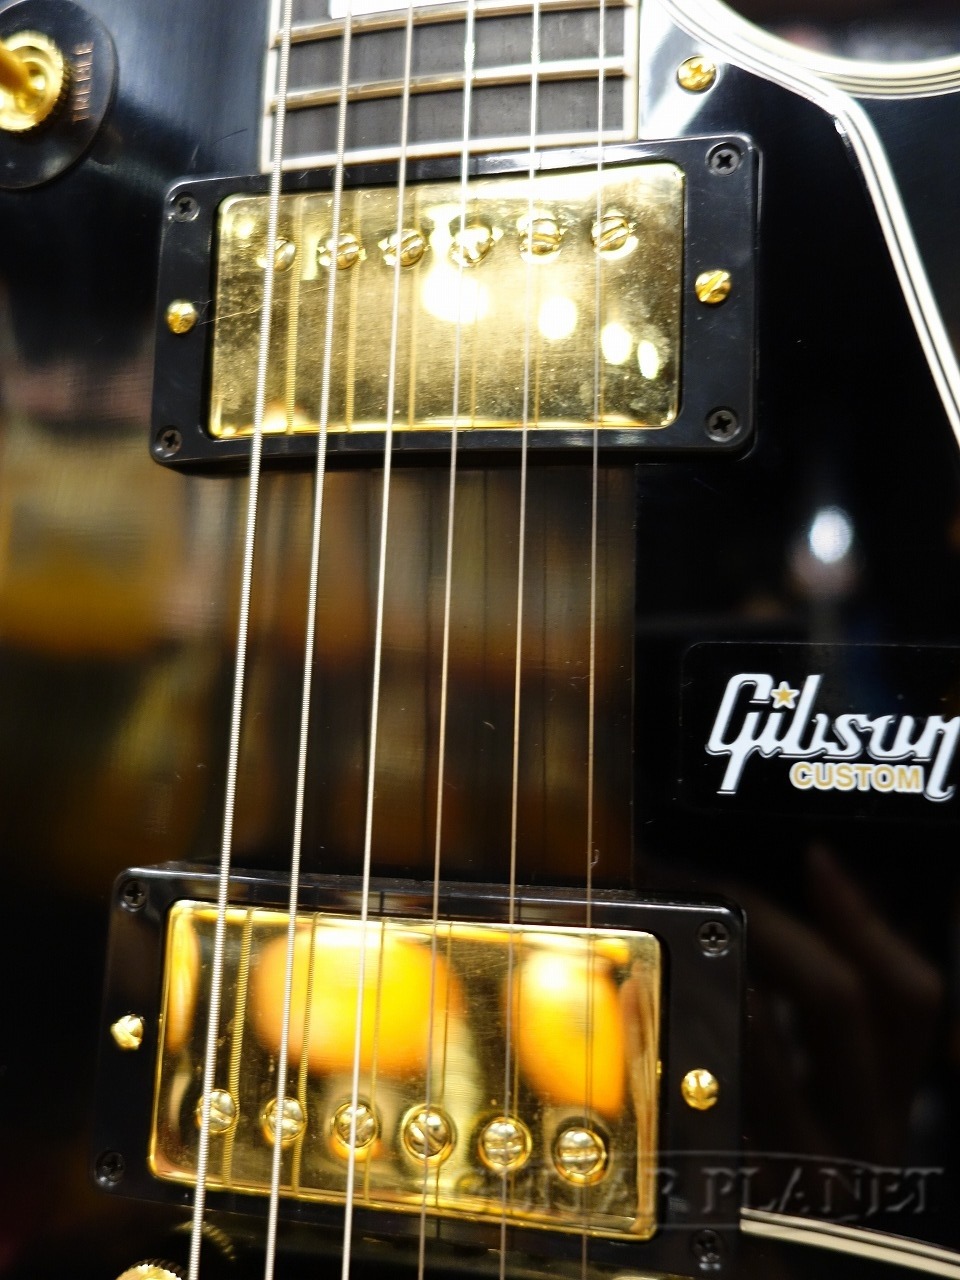 ギタプラブログ!!(Guitar Planet Official Blog) - ギブソン編第百五十 